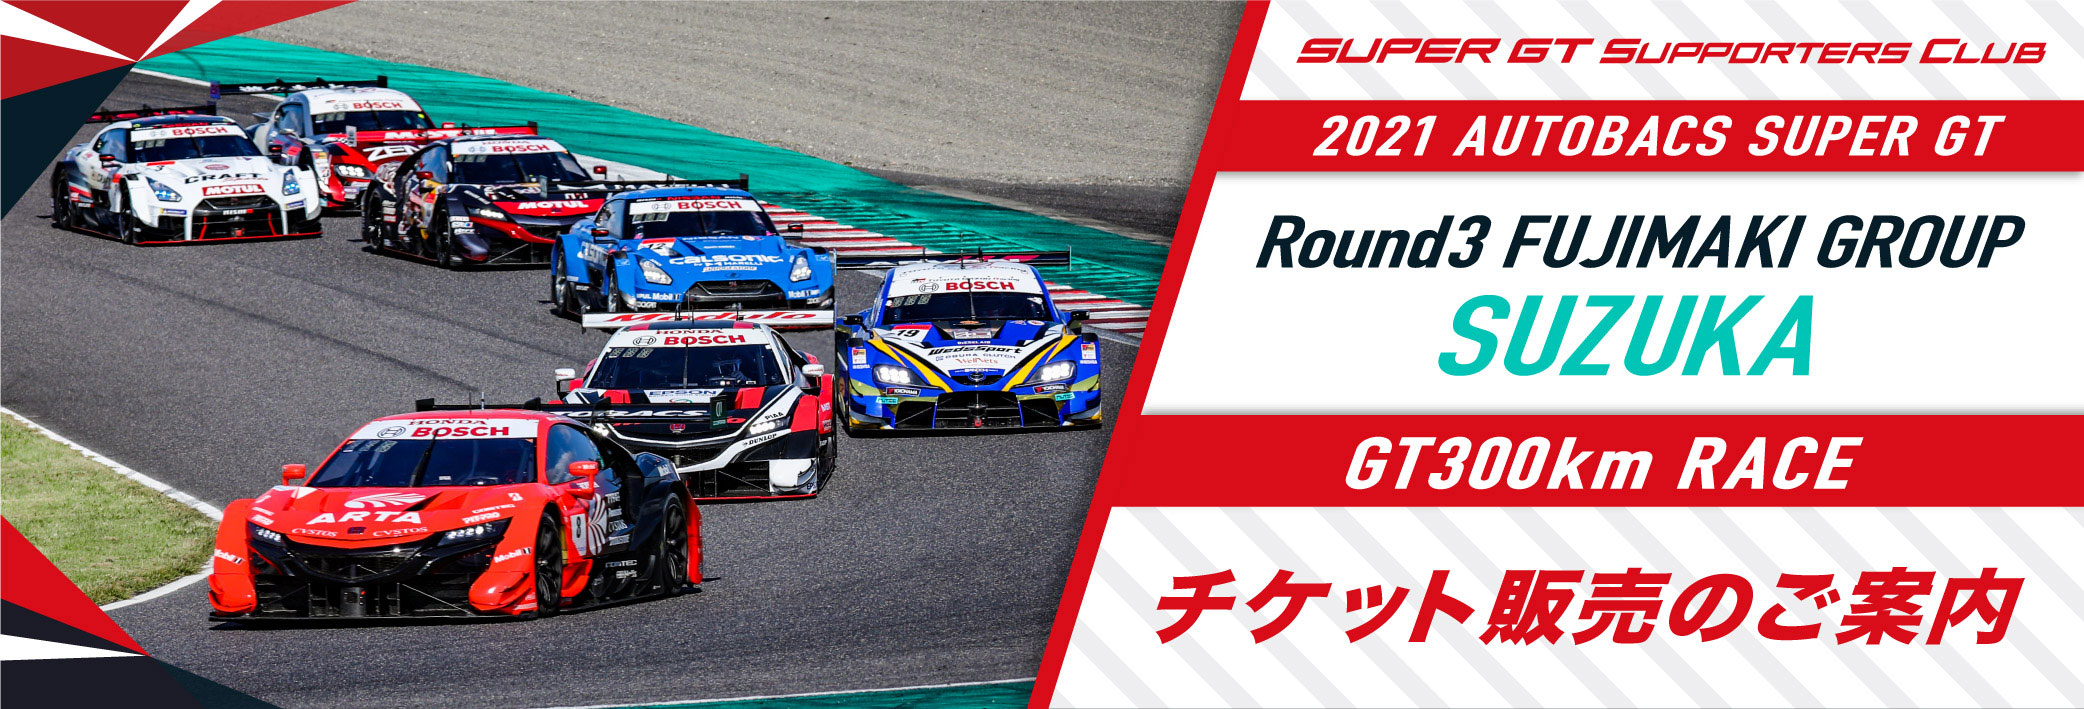 2021 AUTOBACS SUPER GT Round3 FUJIMAKI GROUP SUZUKA GT 300km RACE  チケット販売のご案内 | SUPER GT SQUARE